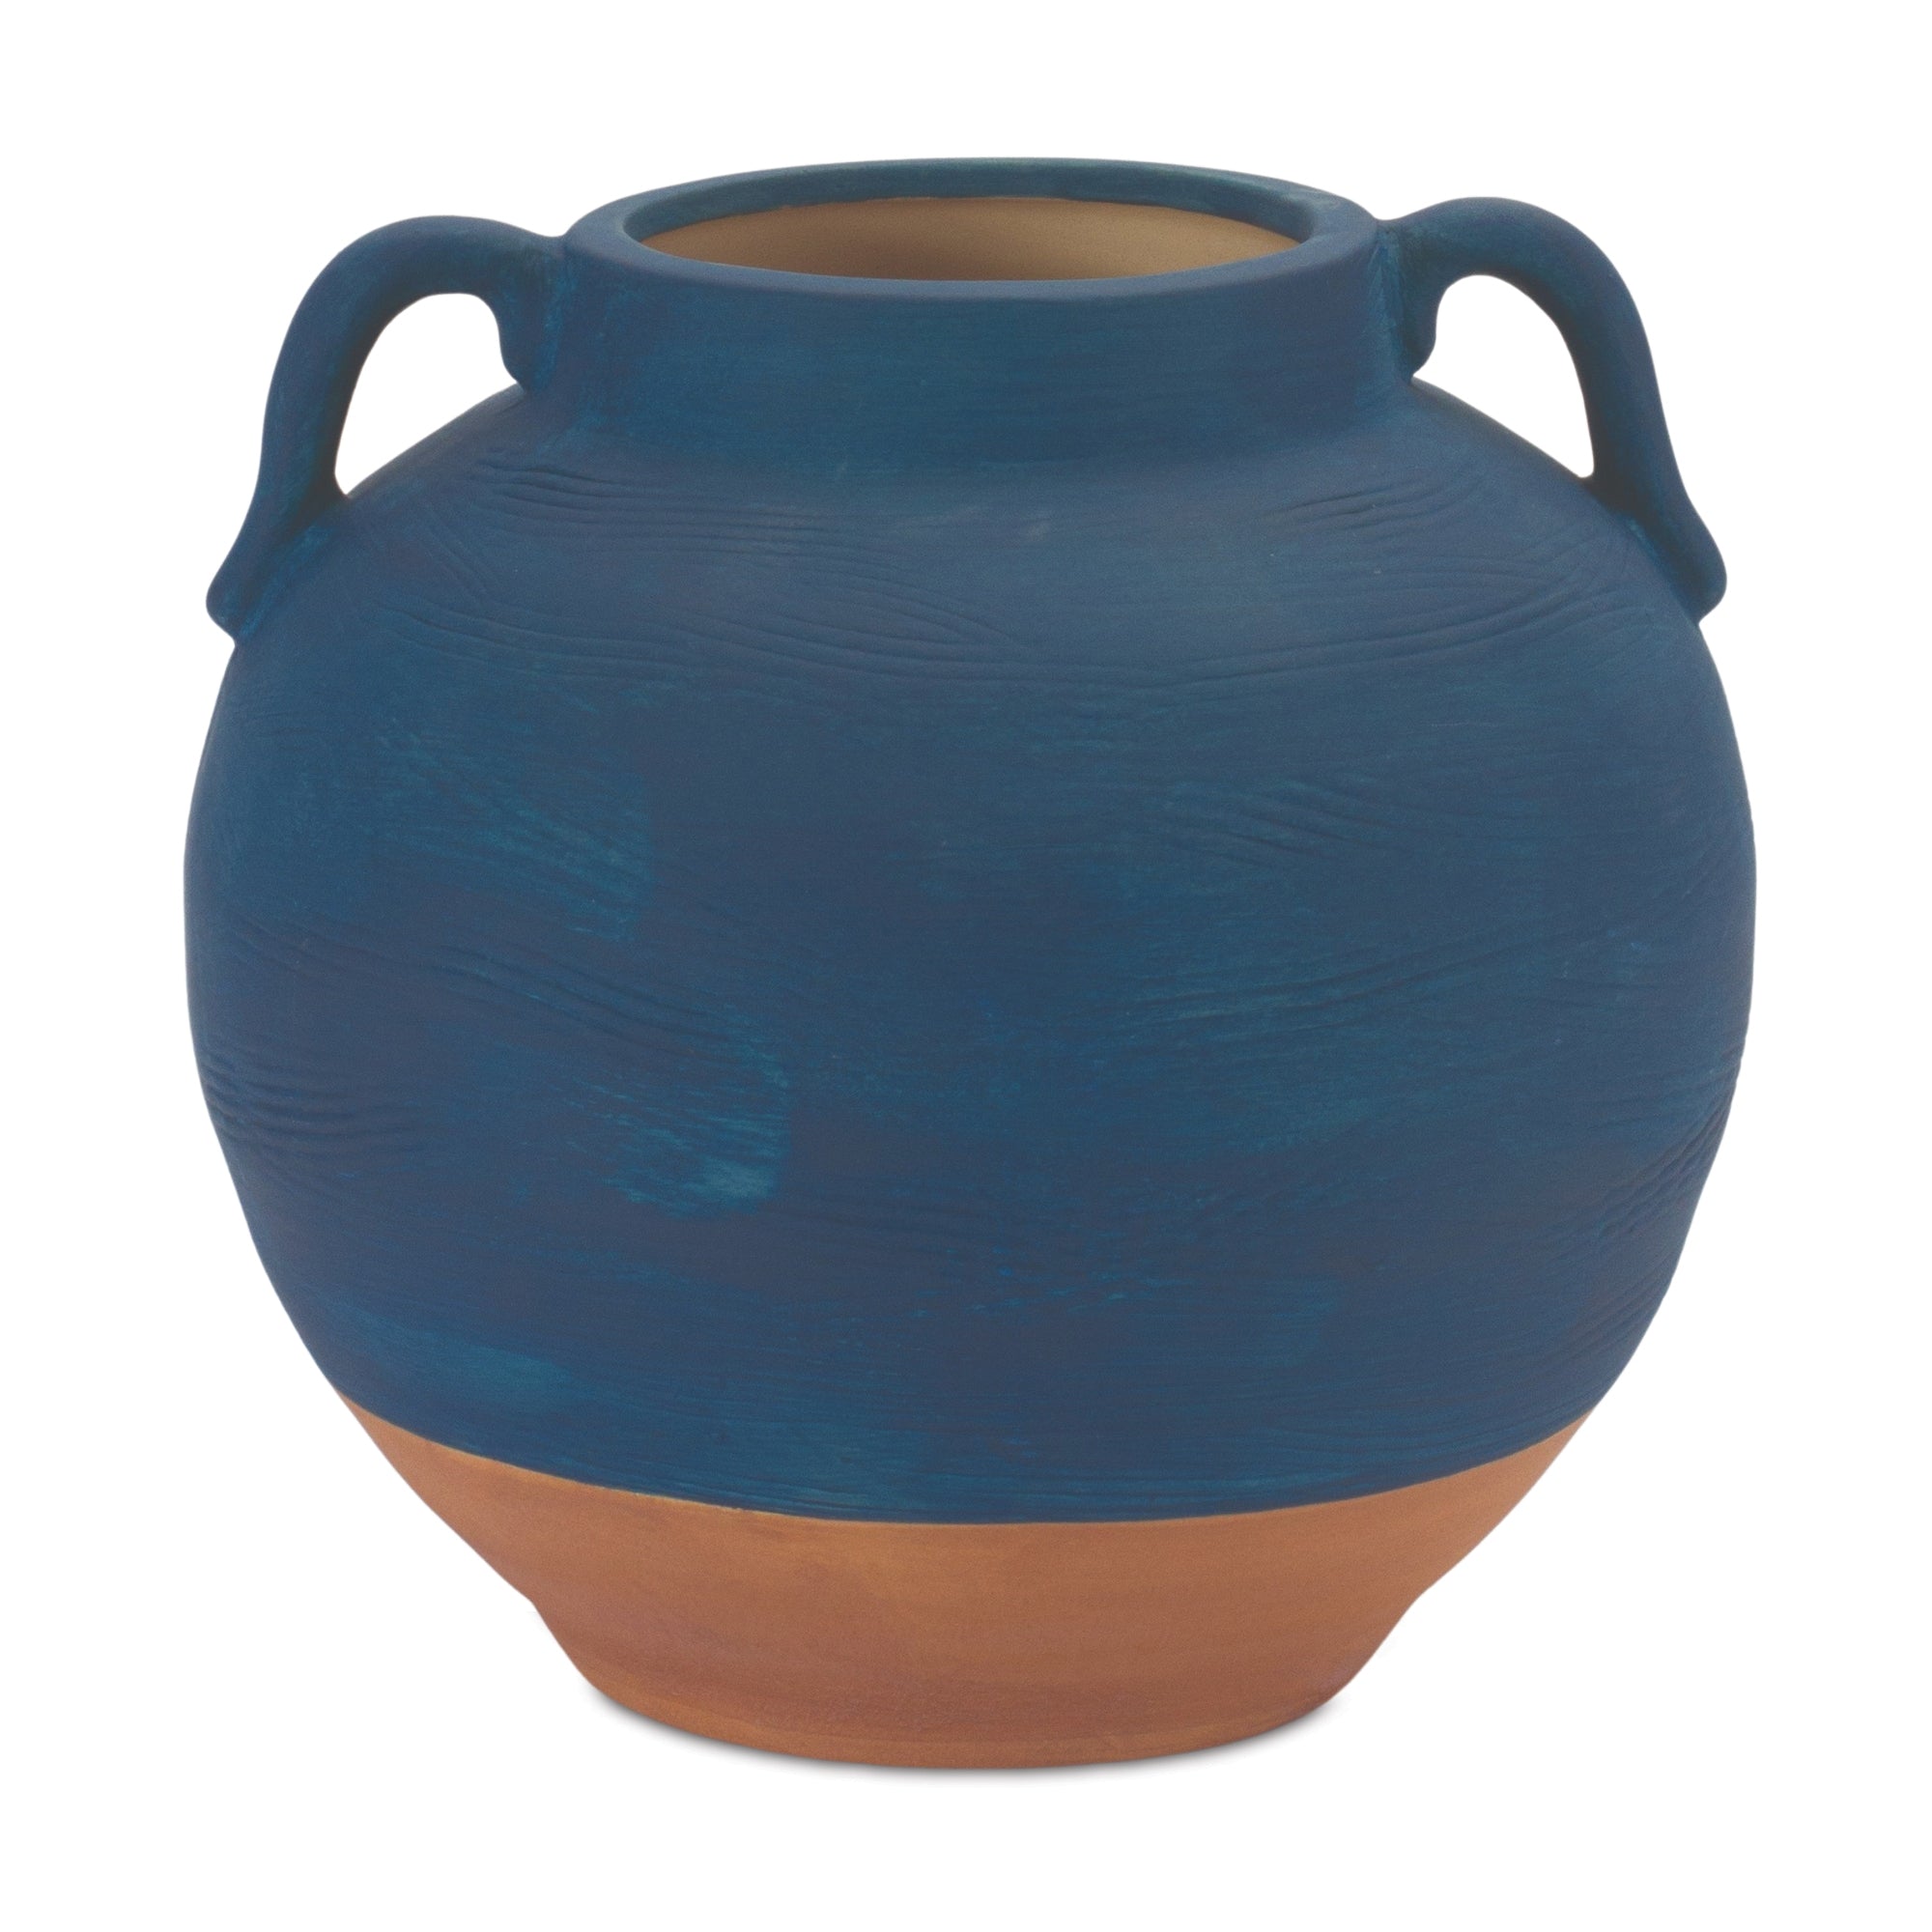 Ceramic Urn Vase with Terra Cotta Accent 7" - Pier 1